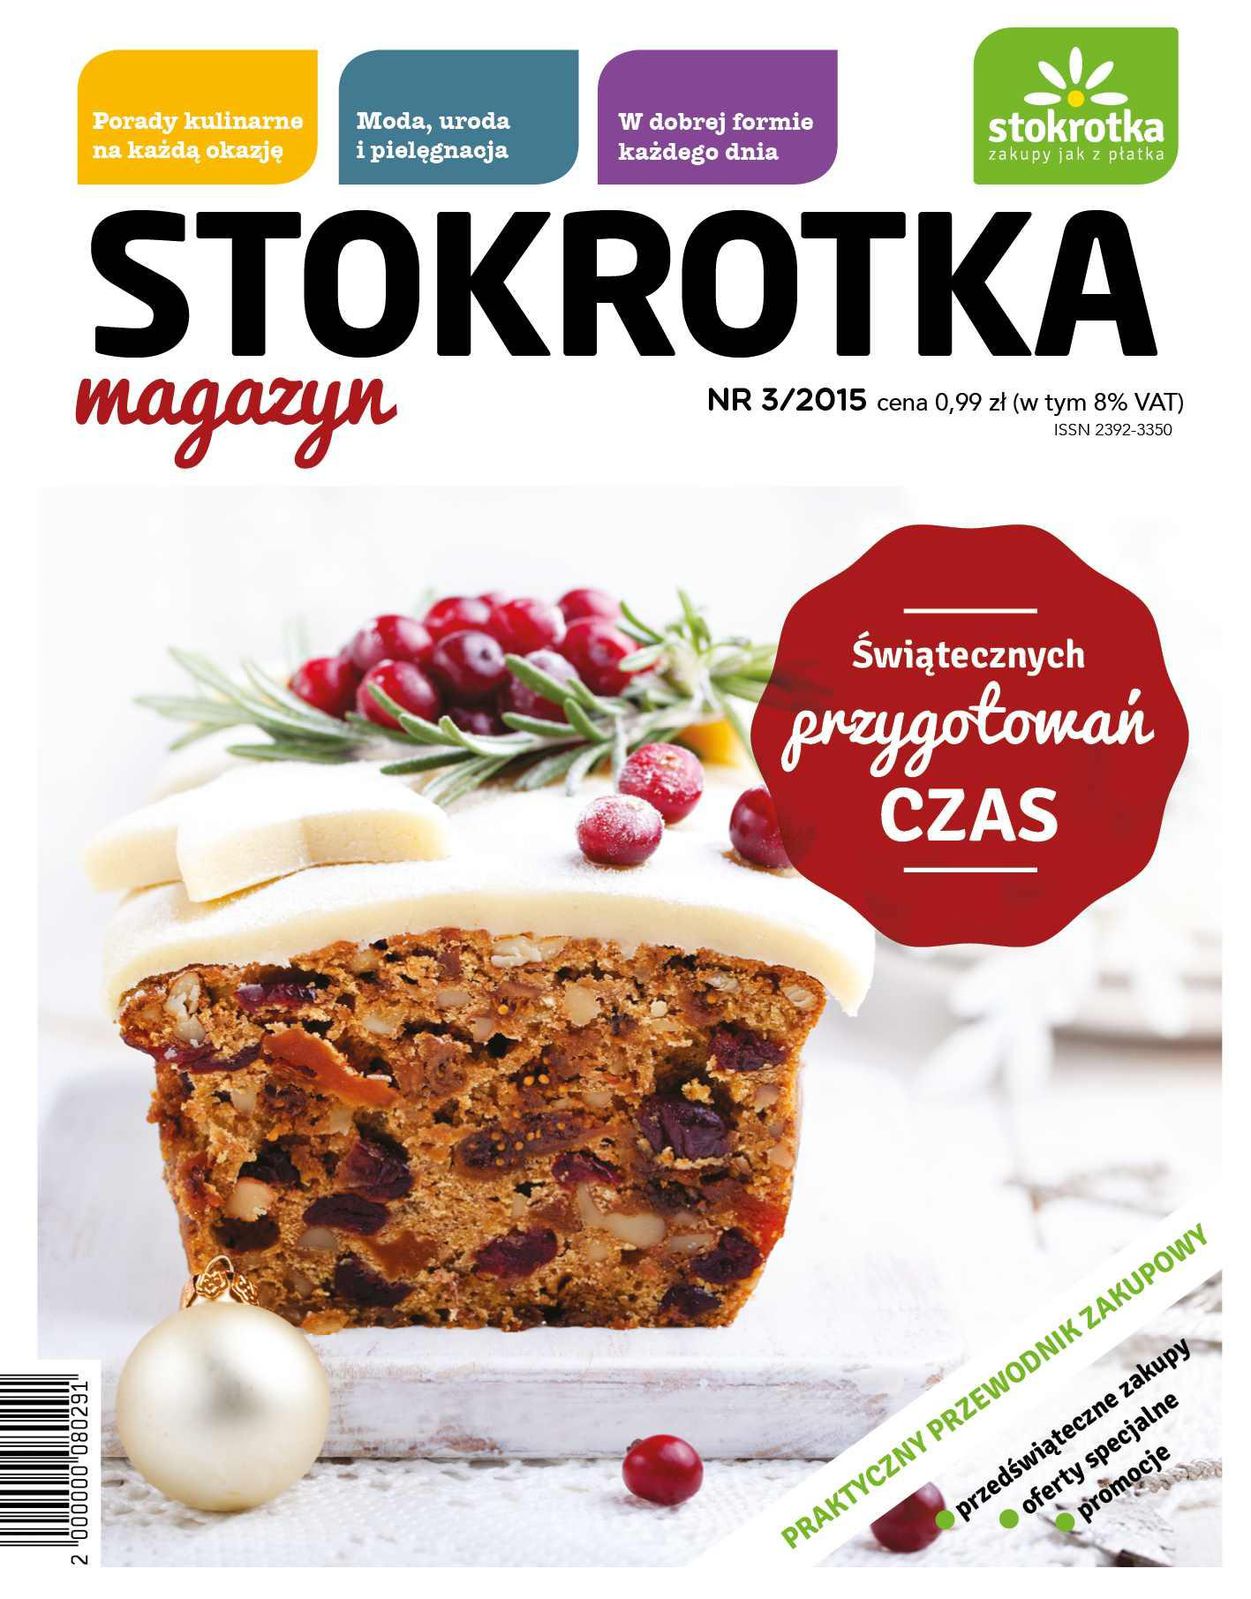 Gazetka promocyjna Stokrotka do 31/12/2015 str.0